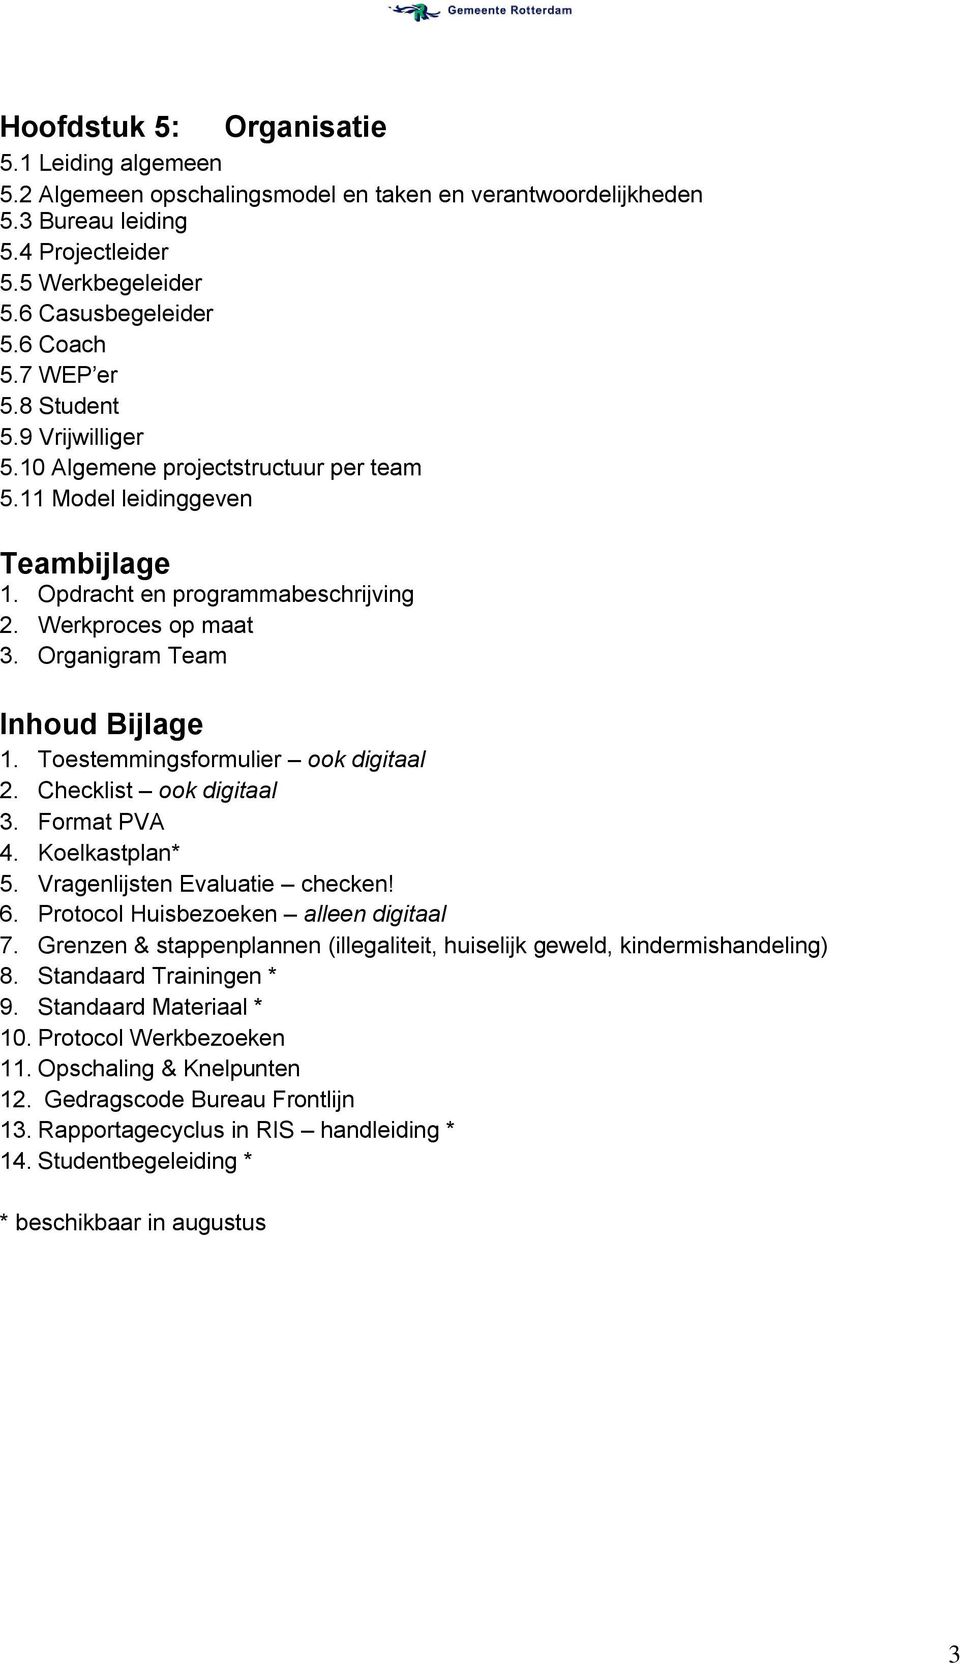 Organigram Team Inhoud Bijlage 1. Toestemmingsformulier ook digitaal 2. Checklist ook digitaal 3. Format PVA 4. Koelkastplan* 5. Vragenlijsten Evaluatie checken! 6.